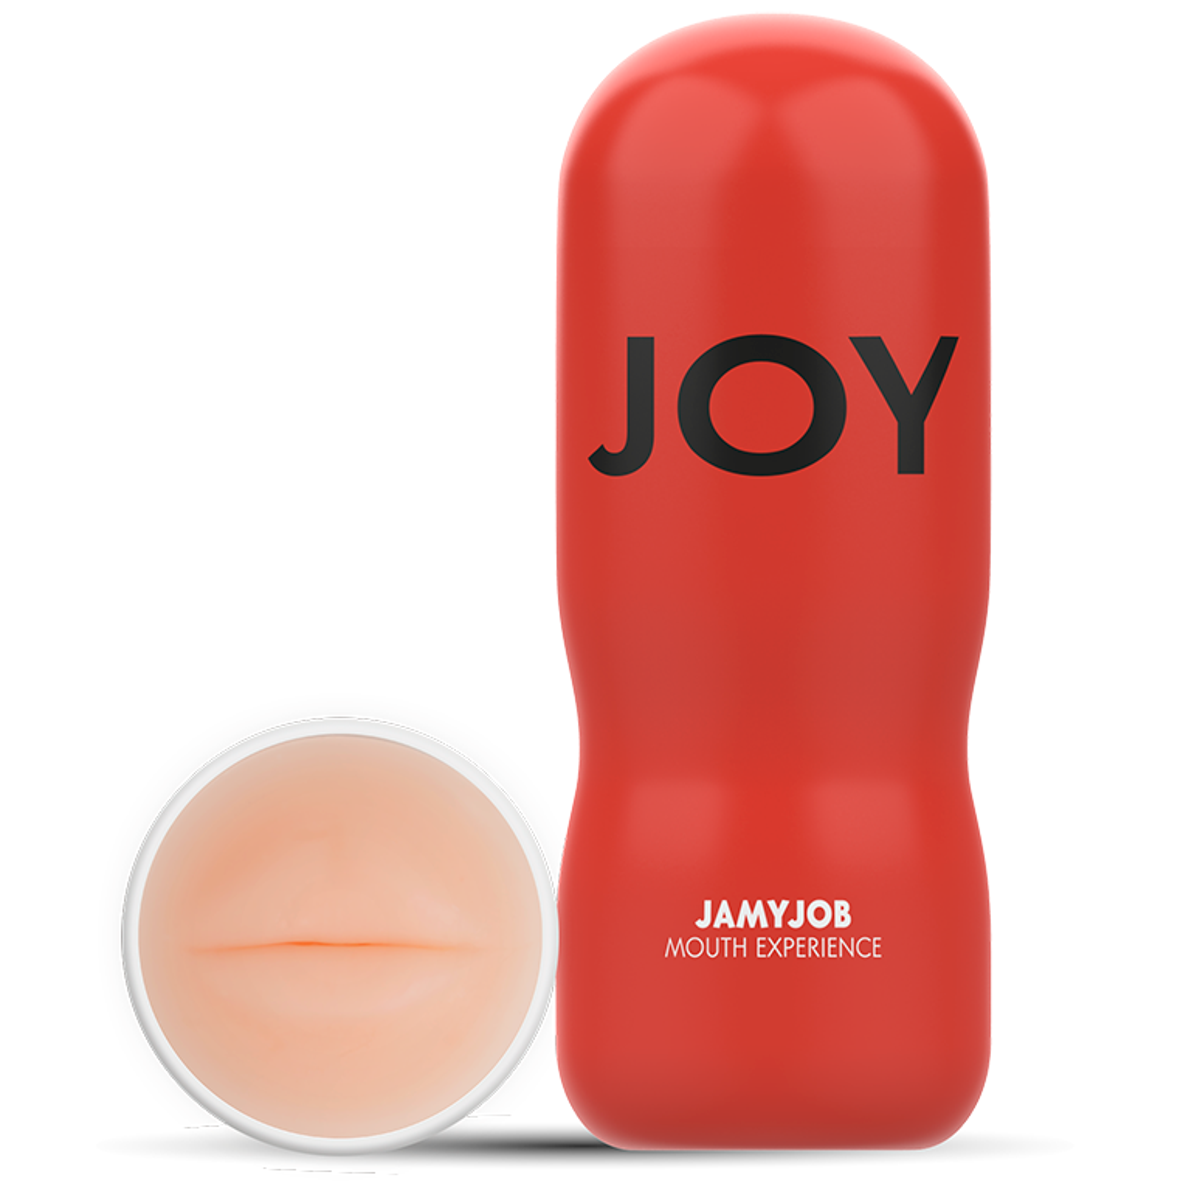 Masturbator "Joy: Mouth Experience" - OH MY! FANTASY